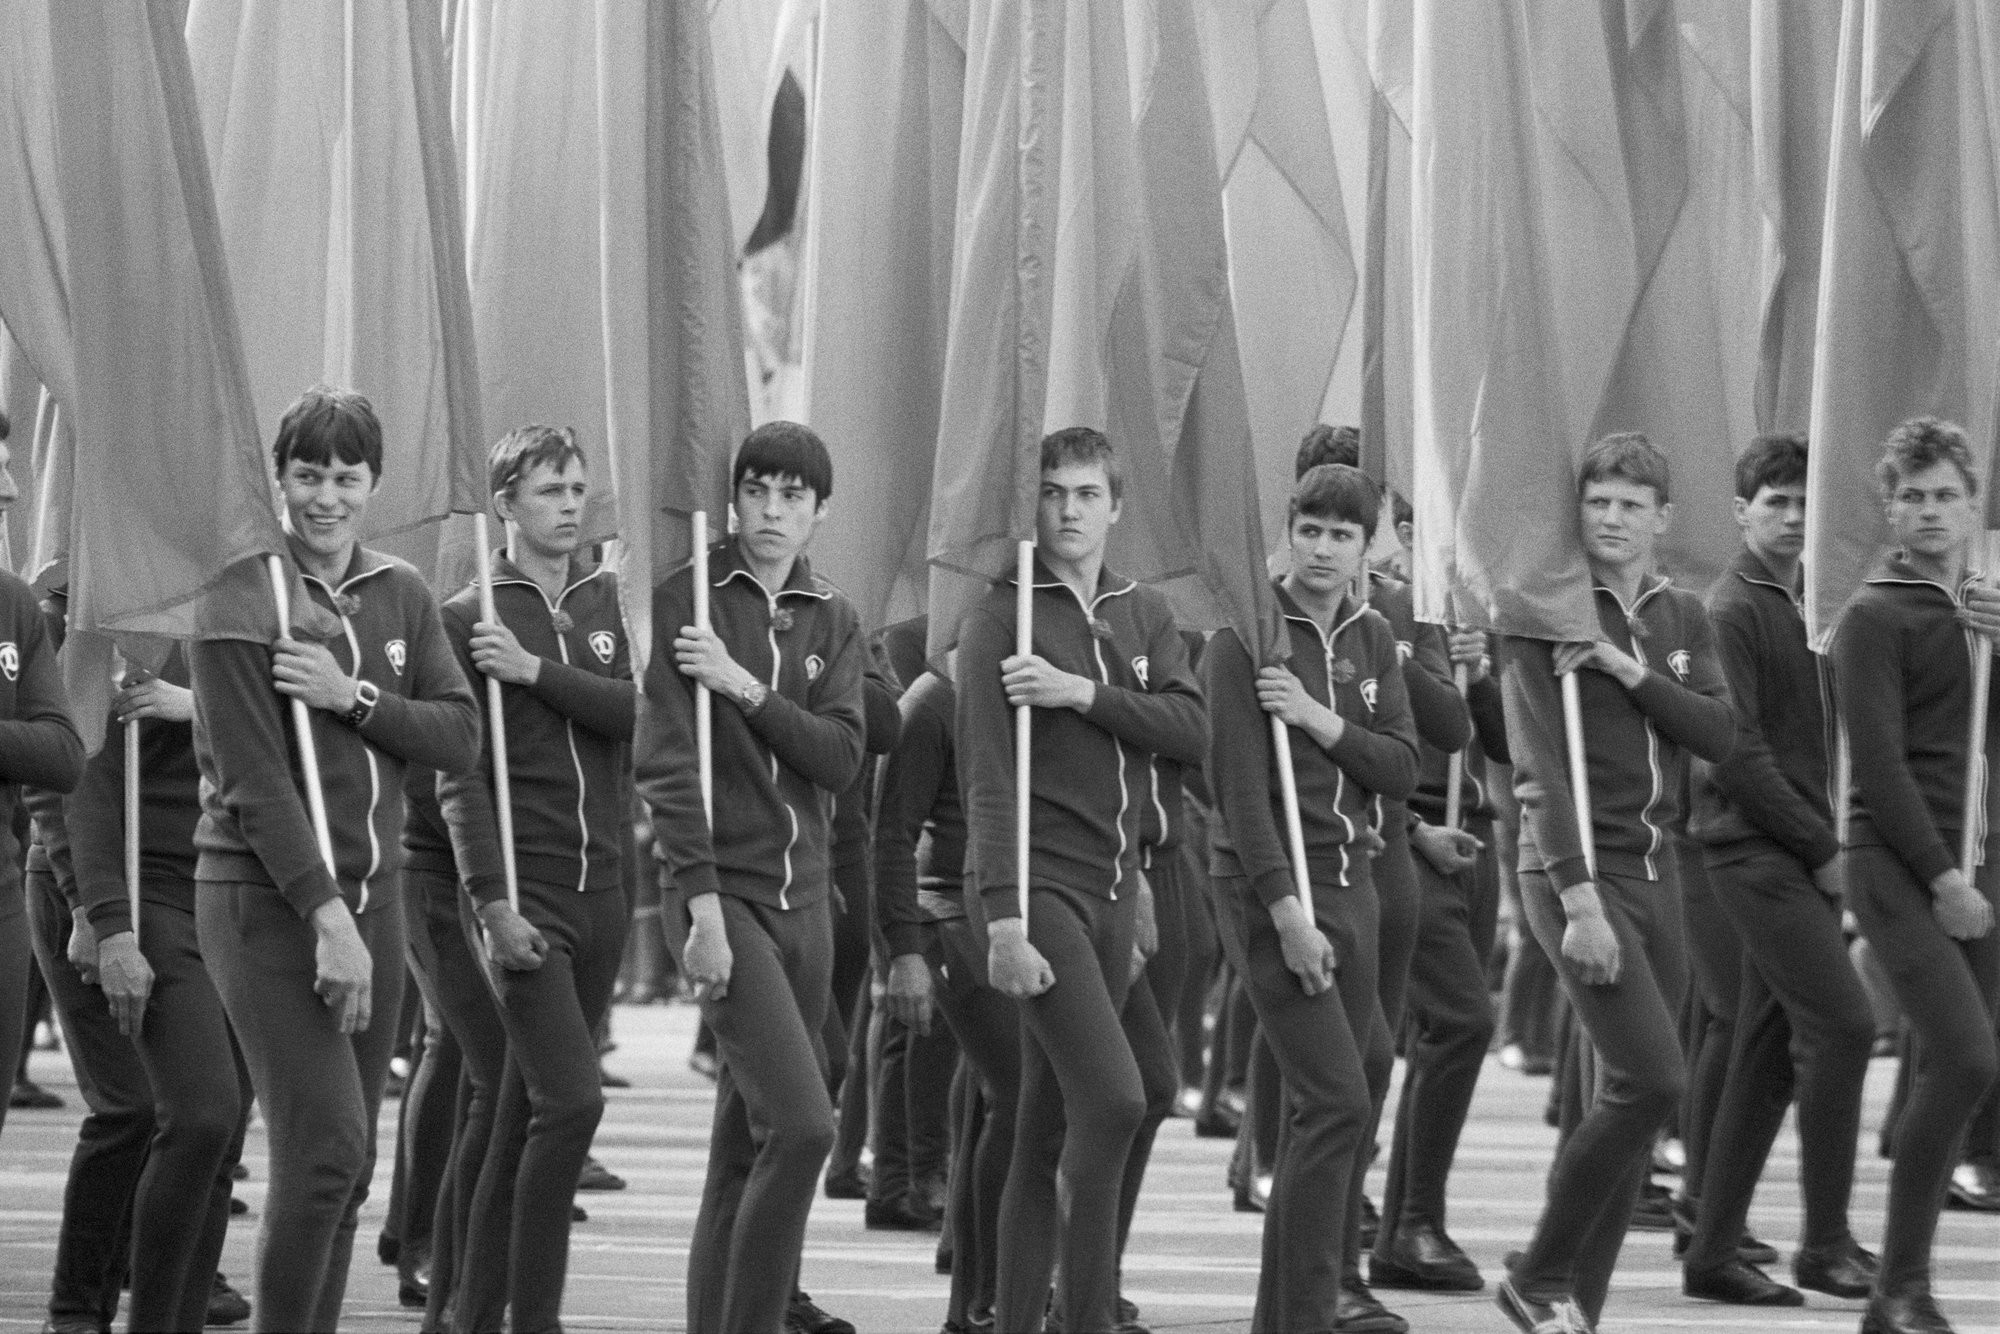 Члены спортивной организации Динамо на параде 1 мая 1980 года. Берлин, ГДР. Фотограф Уте Малер